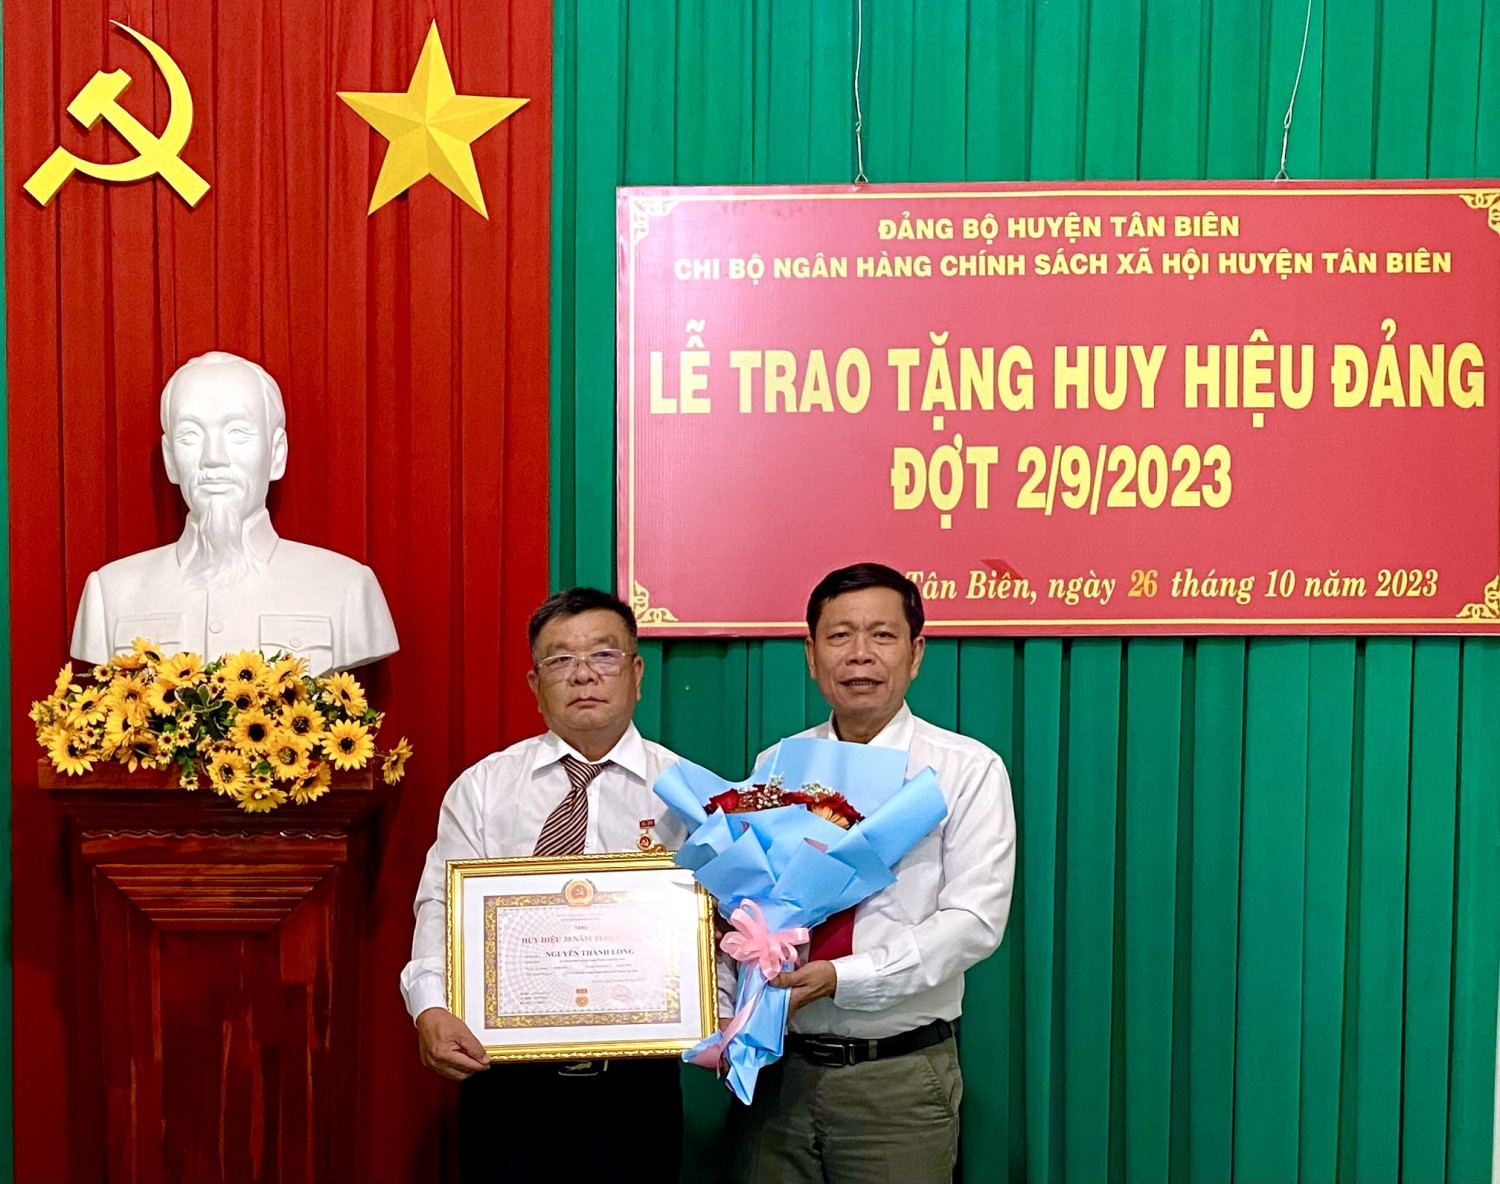 Tân Biên Giám đốc Ngân hàng CSXH huyện nhận huy hiệu 30 năm tuổi đảng